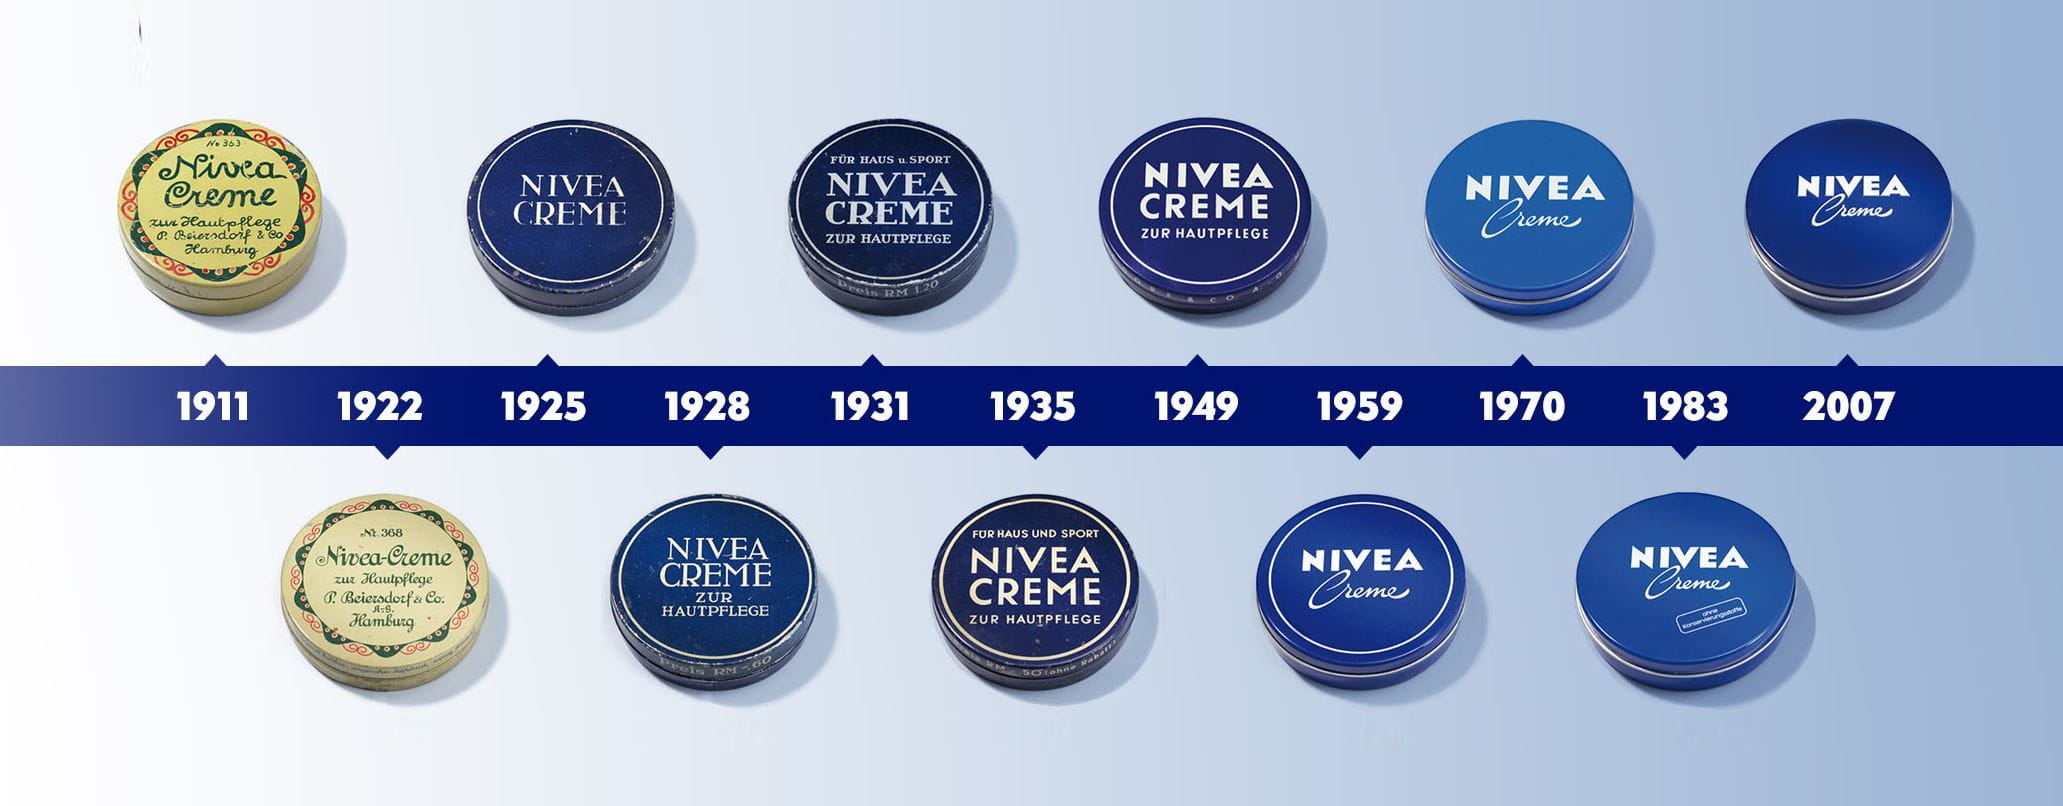 cronologia do creme NIVEA